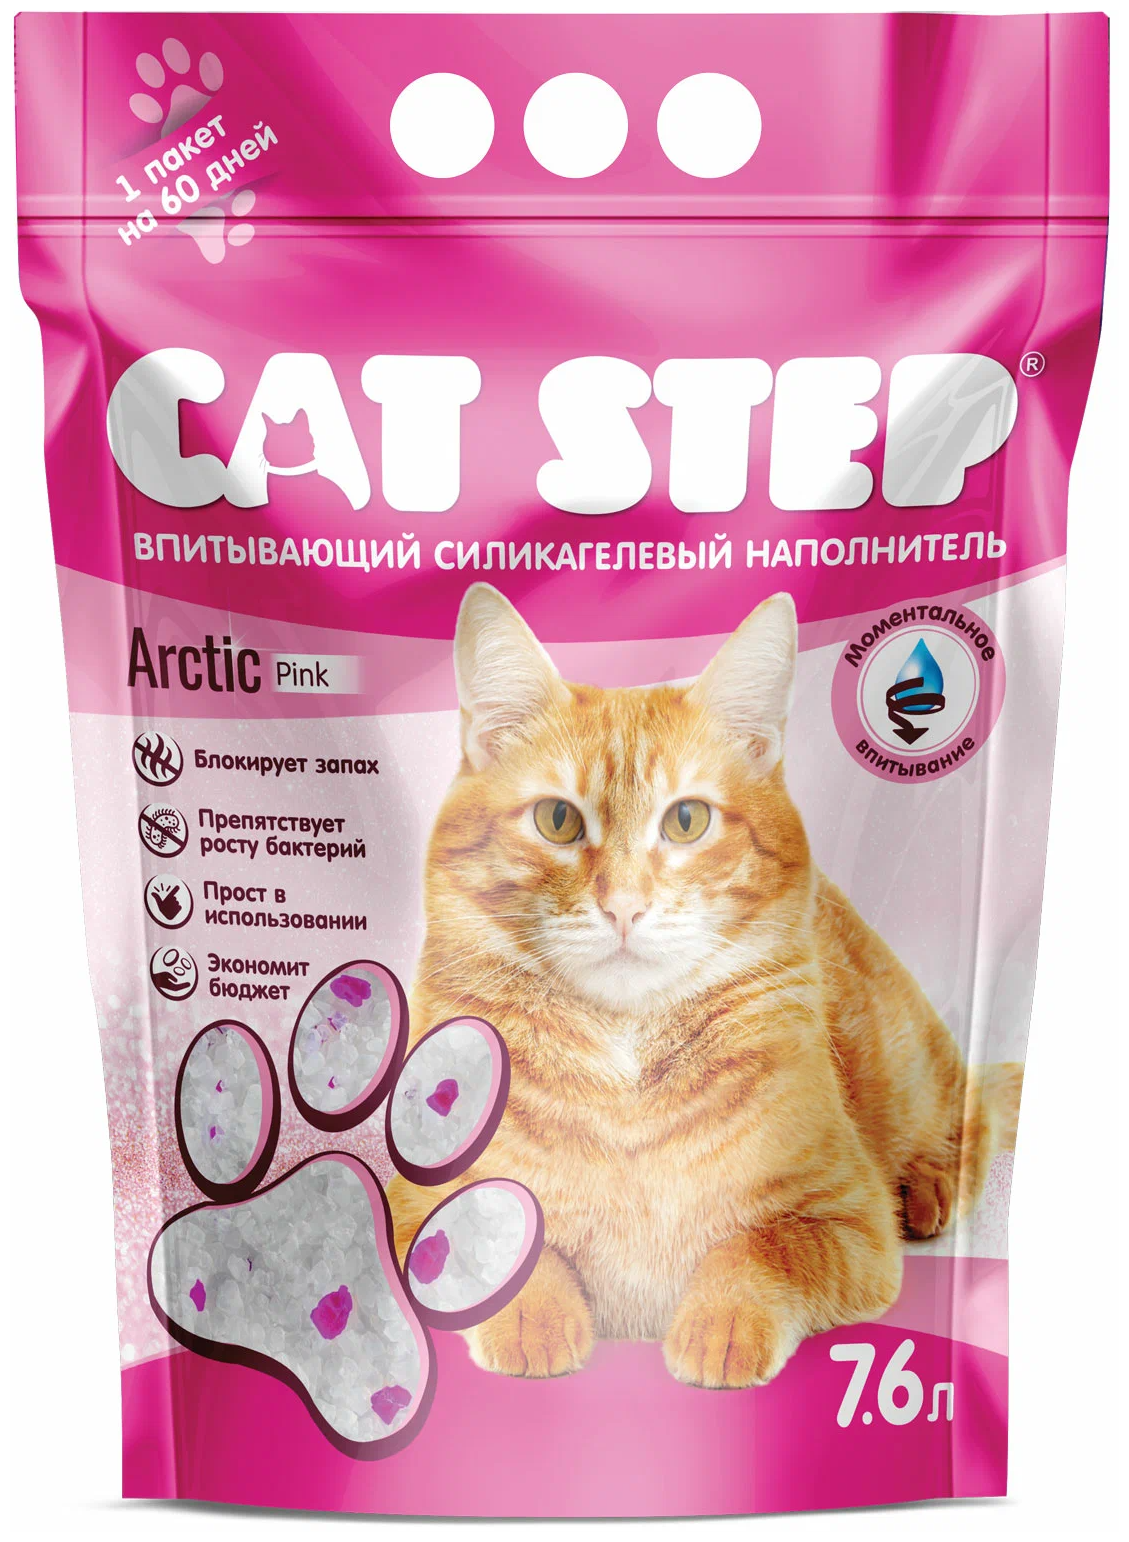 Наполнитель CAT STEP Arctic Pink, впитывающий, силикагелевый, 7.6 л, 3.34 кг - фотография № 1